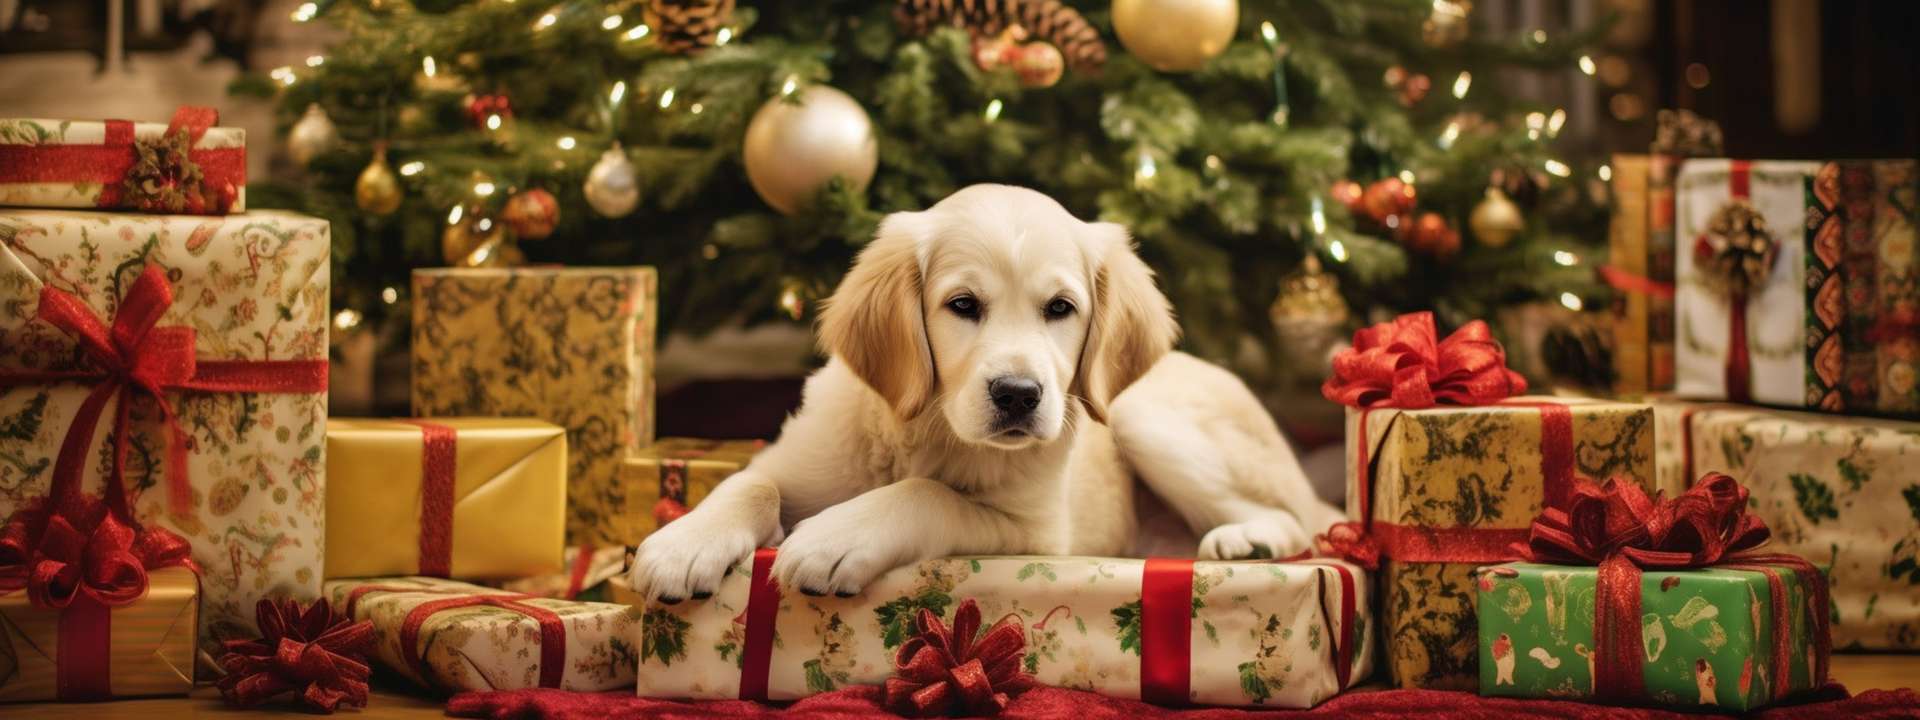 Offrir un animal à Noël, une fausse bonne idée ?